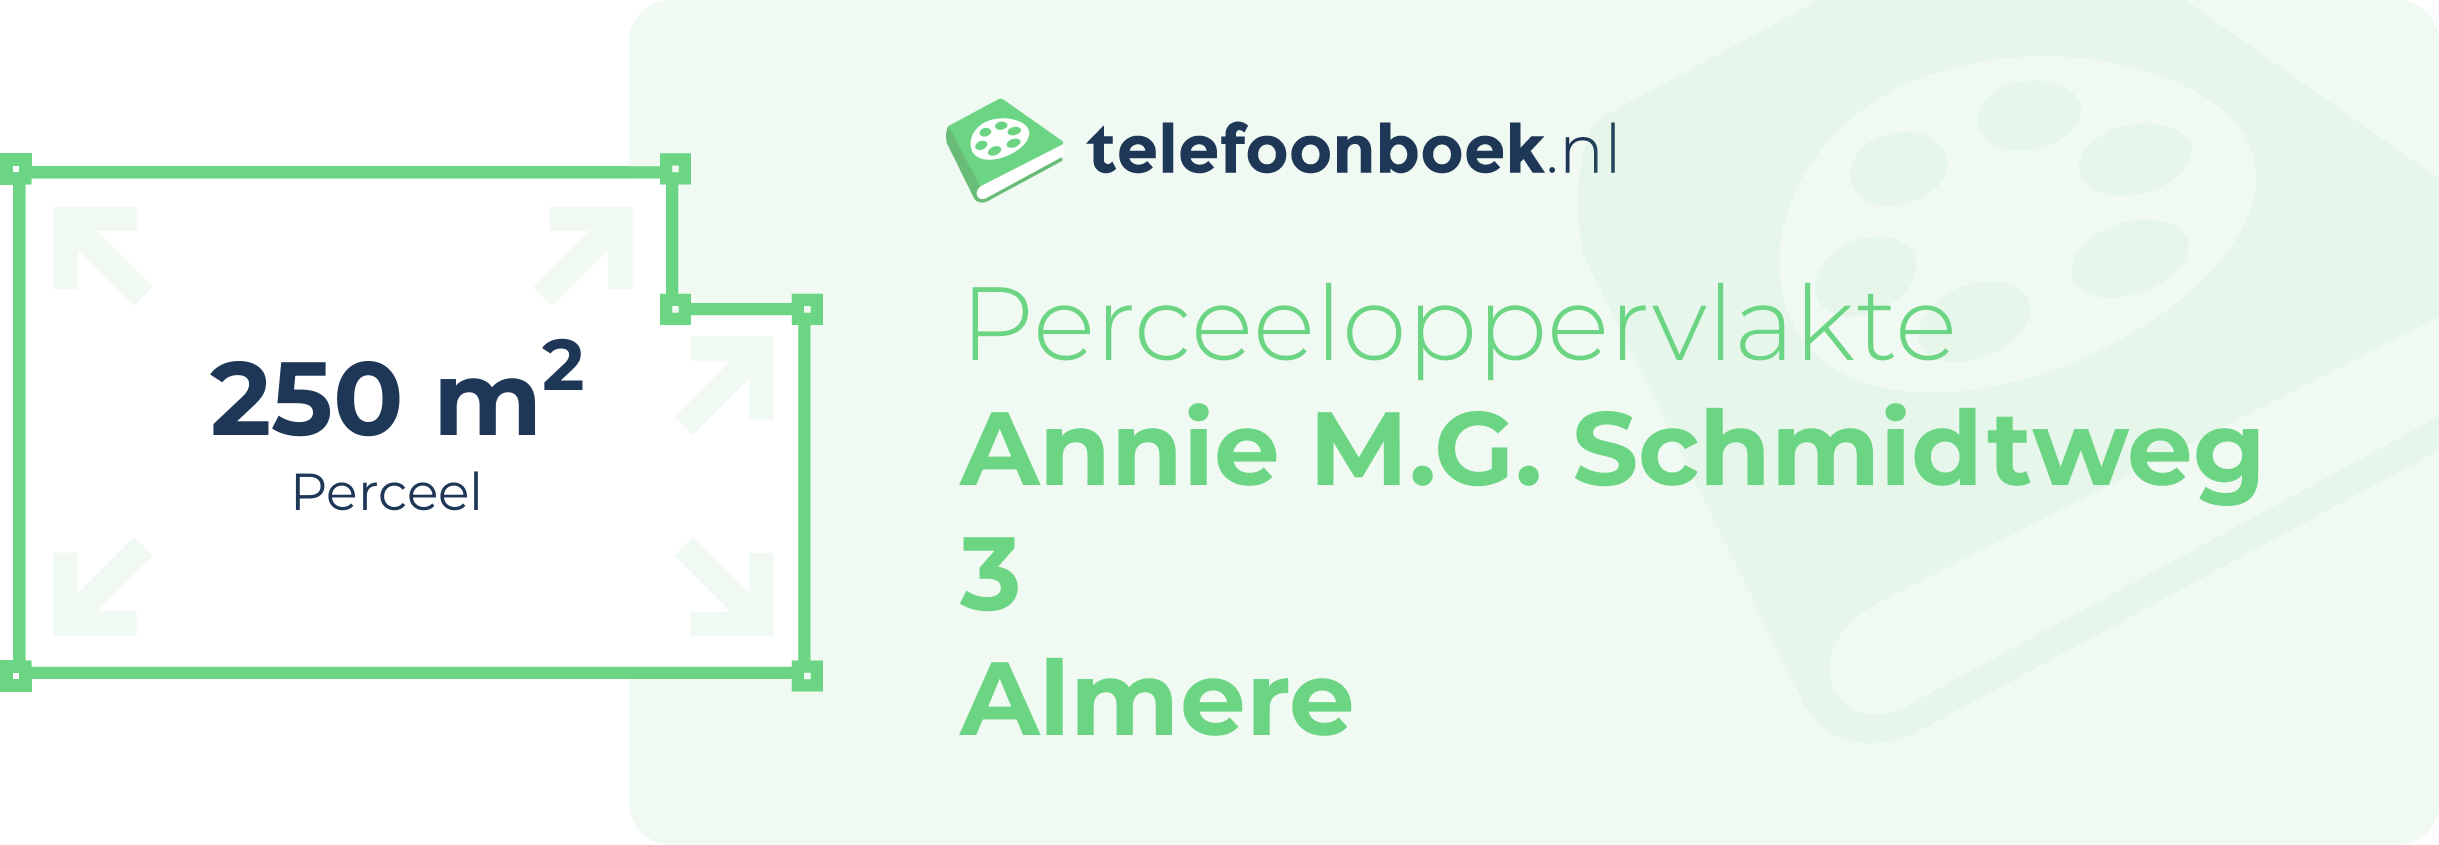 Perceeloppervlakte Annie M.G. Schmidtweg 3 Almere